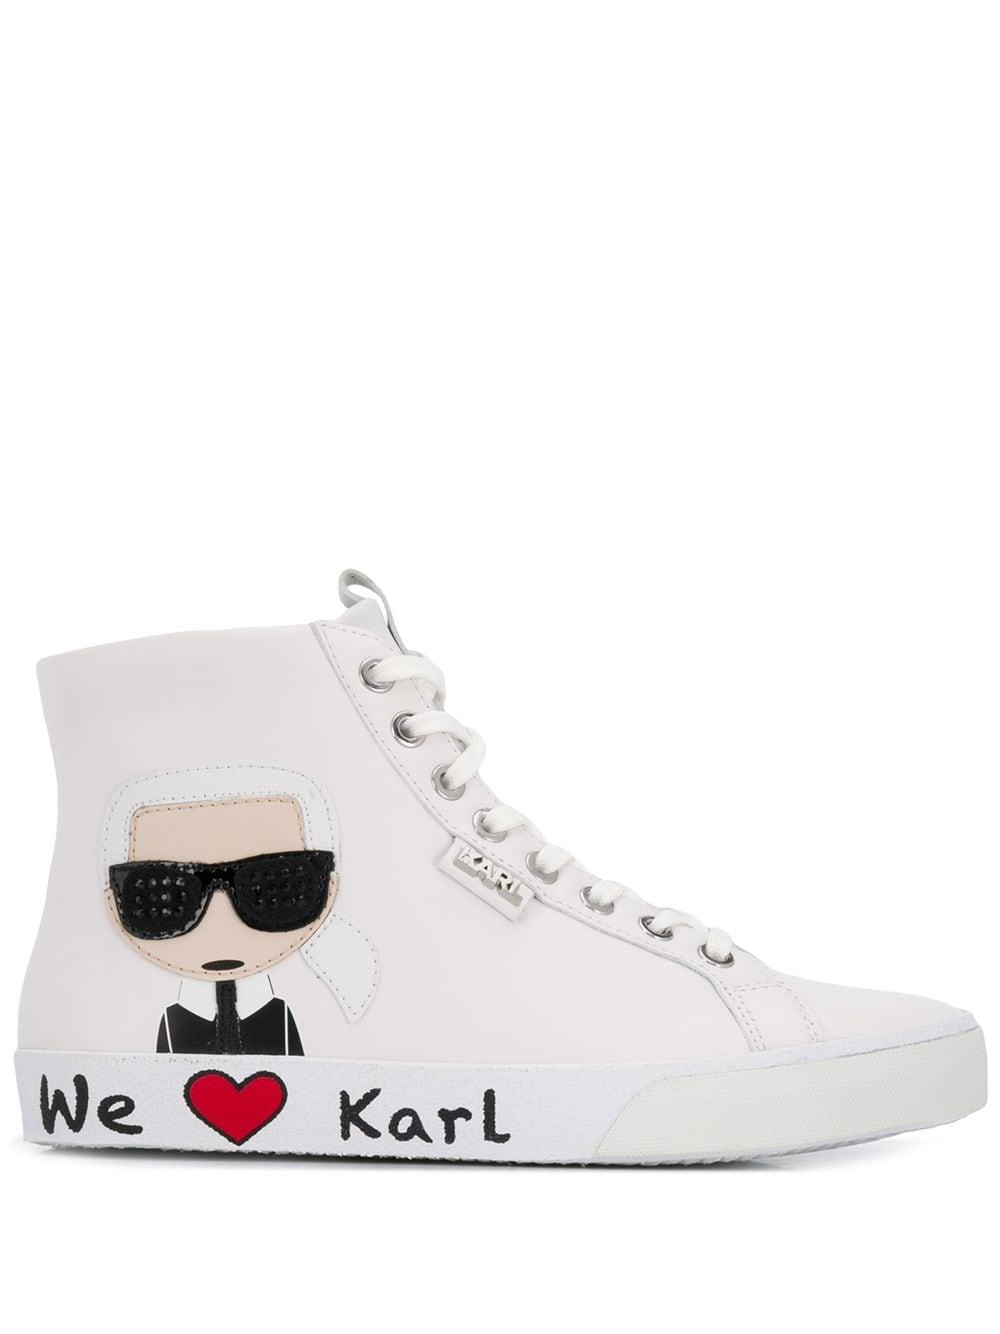 Karl Lagerfeld Leder 'We Love Karl' Sneakers in Weiß | Lyst AT